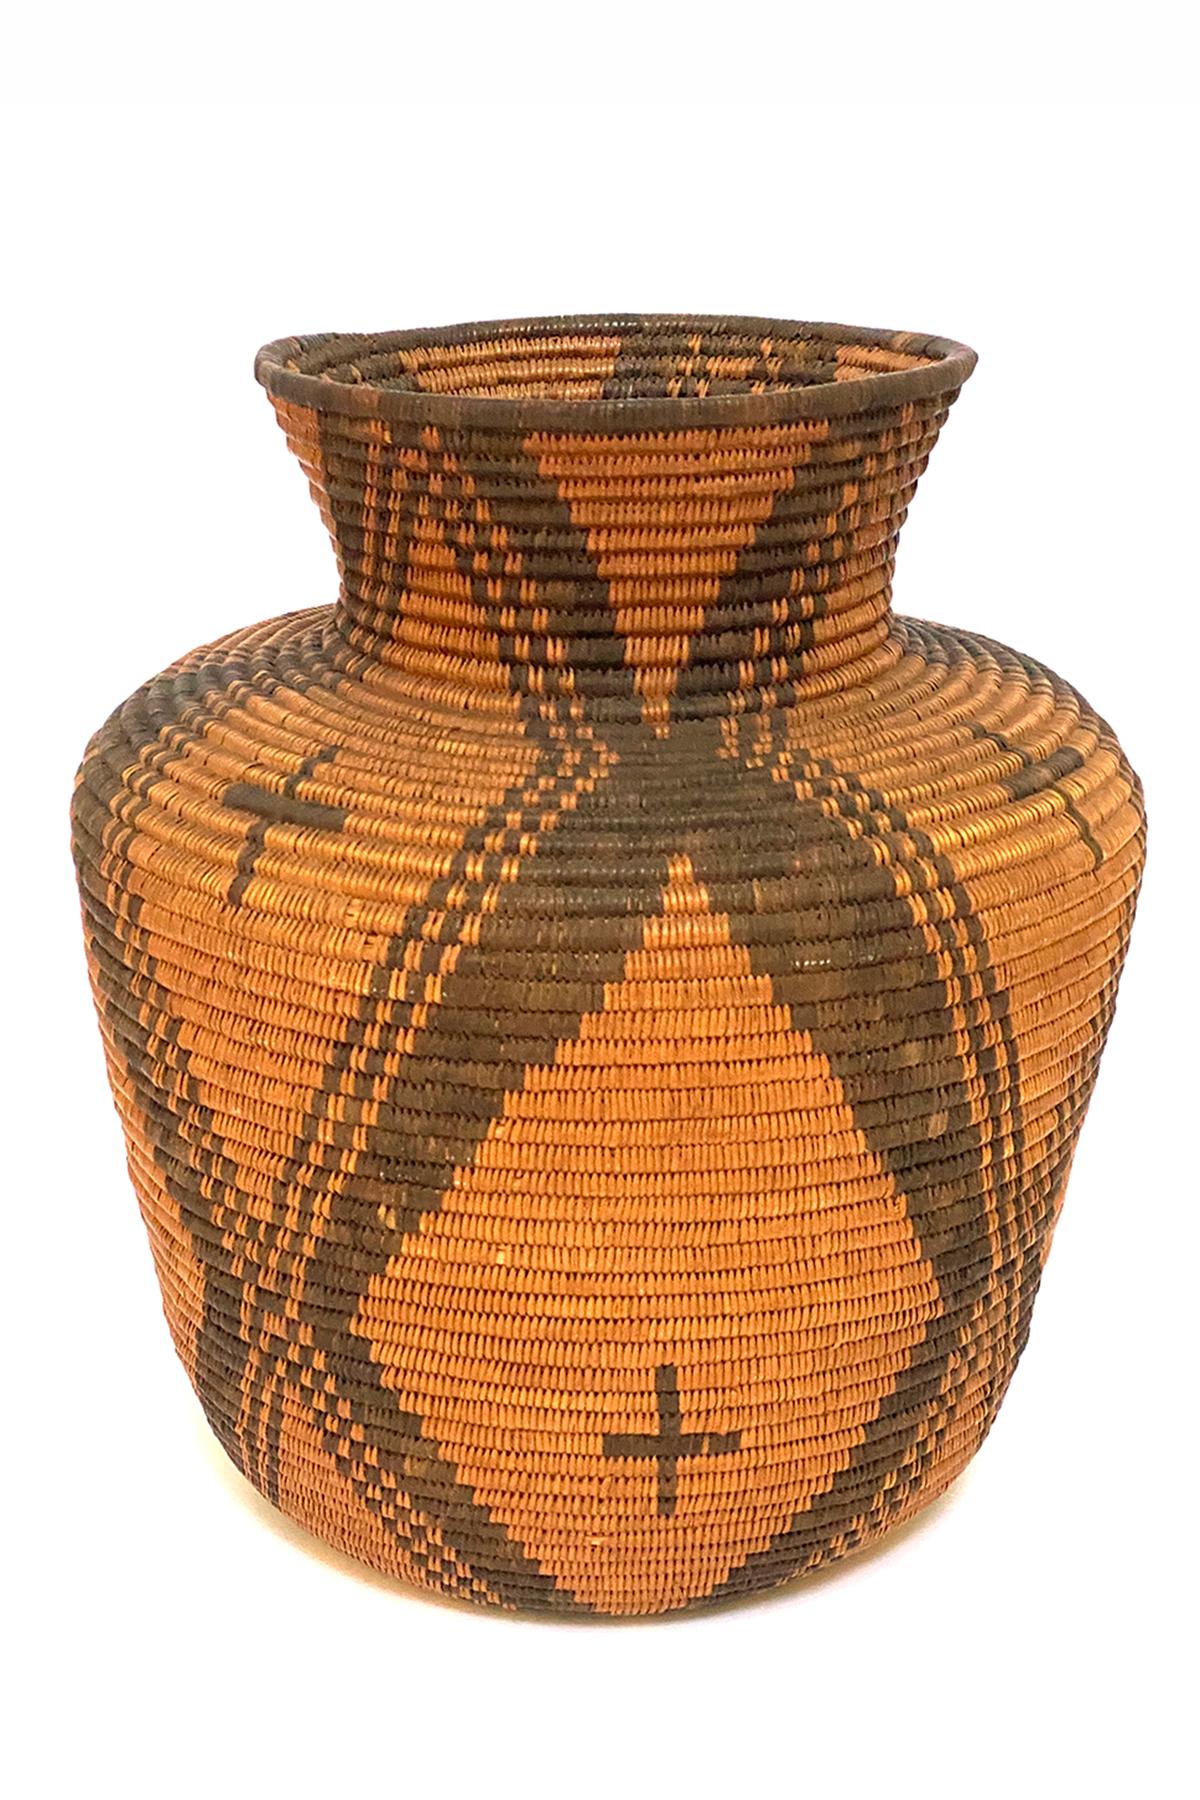 Olla apache en vannerie avec des croix, tissée en fibres naturelles, saule avec griffe du diable, vers 1910. Le panier mesure 12 ¼ de hauteur x 9 pouces de diamètre. Les Apaches, une tribu nomade, s'étendaient dans le sud-ouest américain, notamment